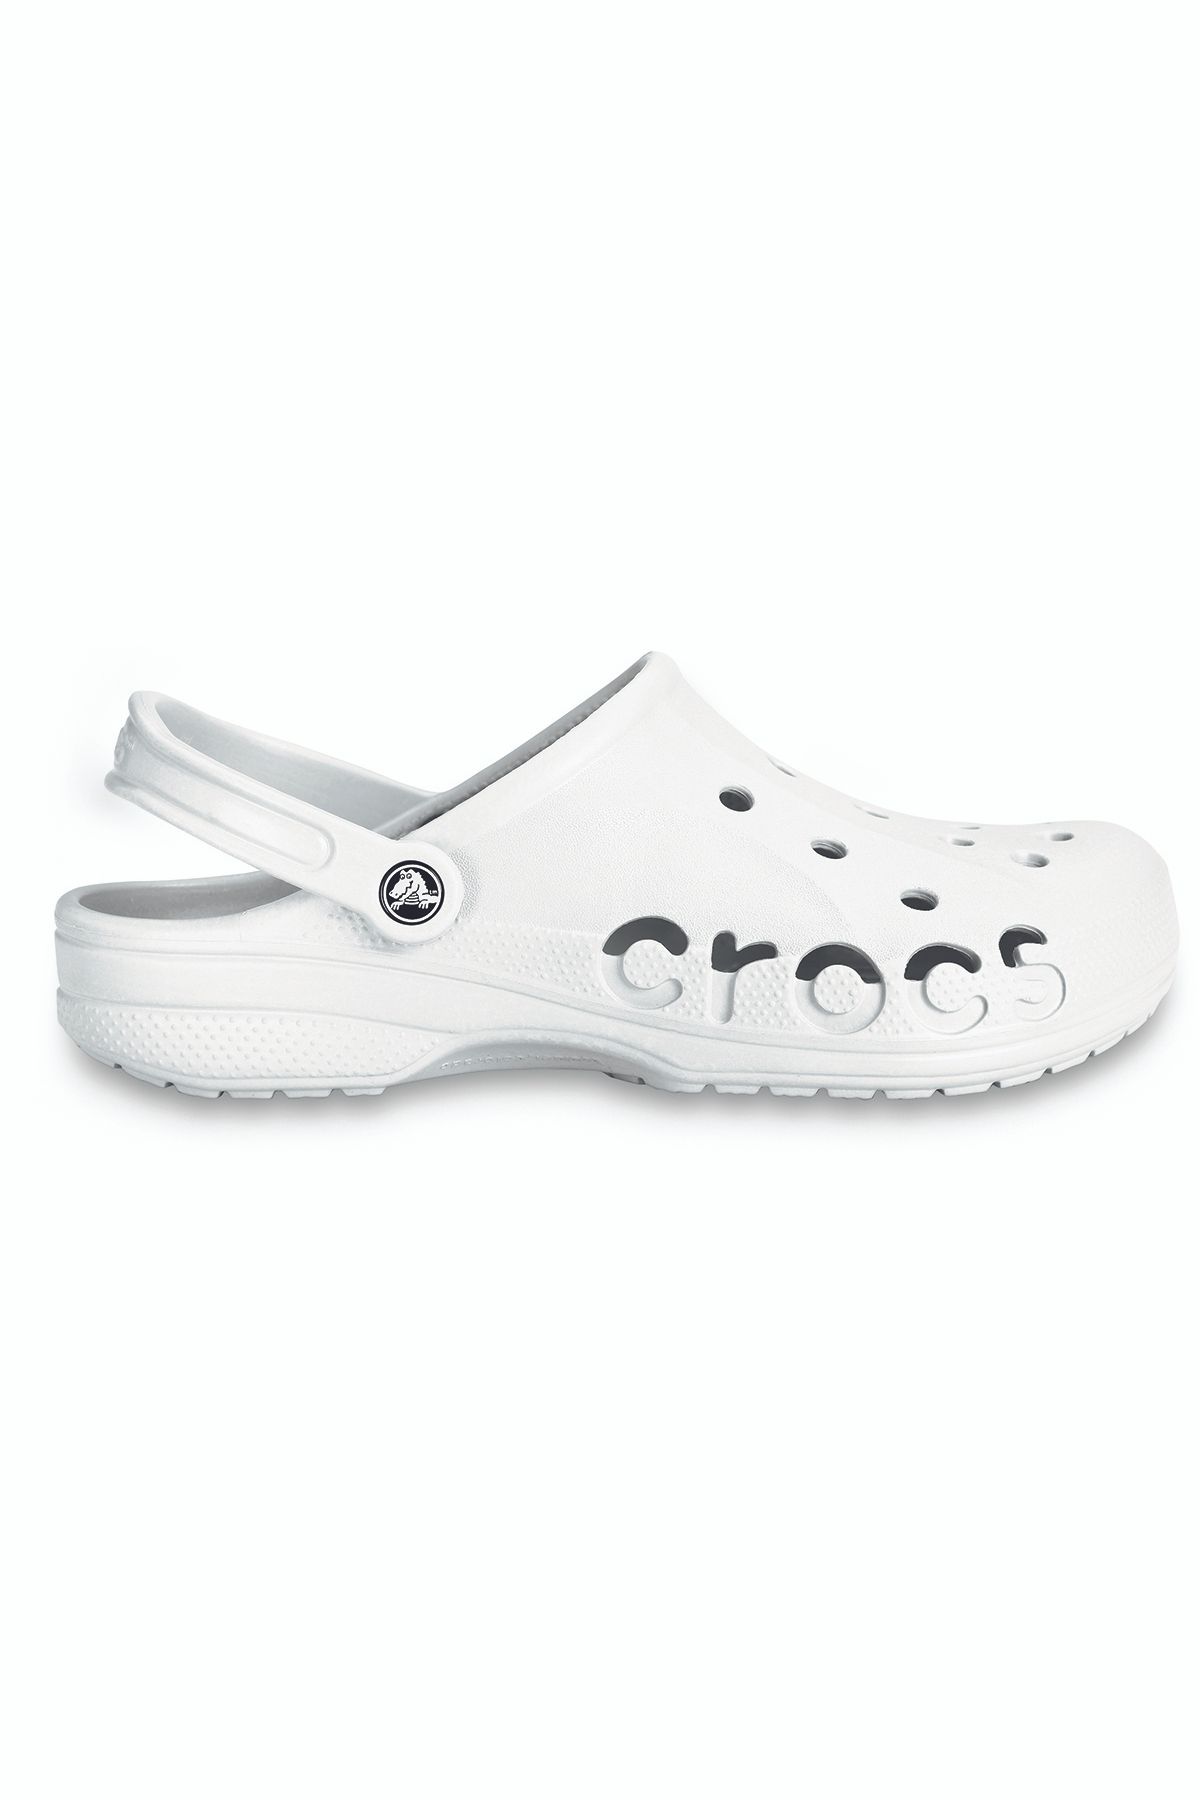 Crocs Baya Kadın Beyaz Günlük Stil Terlik 10126_100